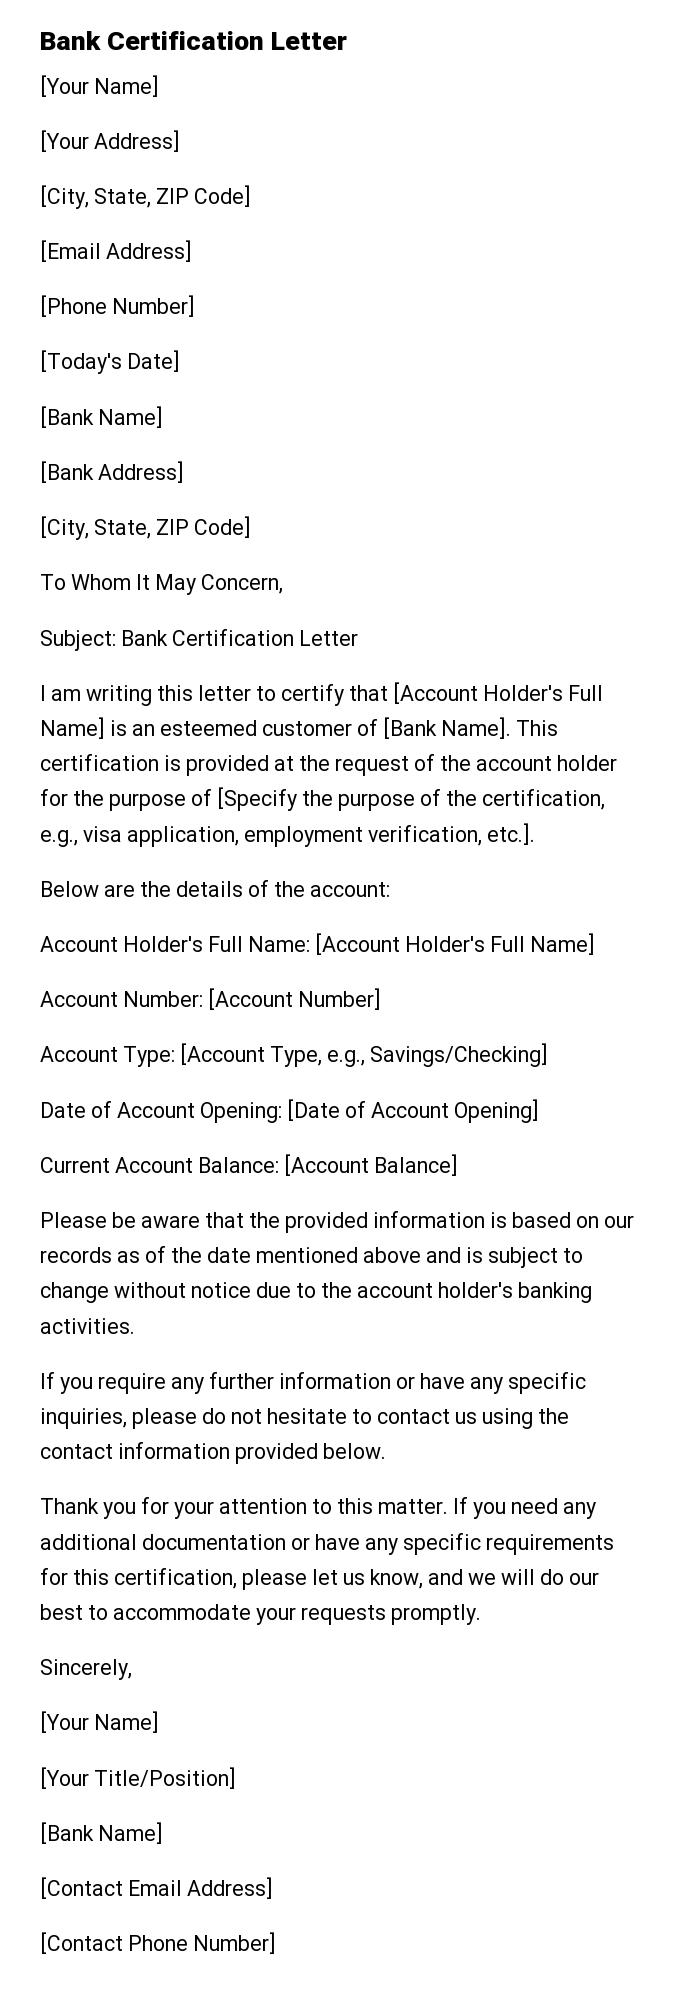 Bank Certification Letter